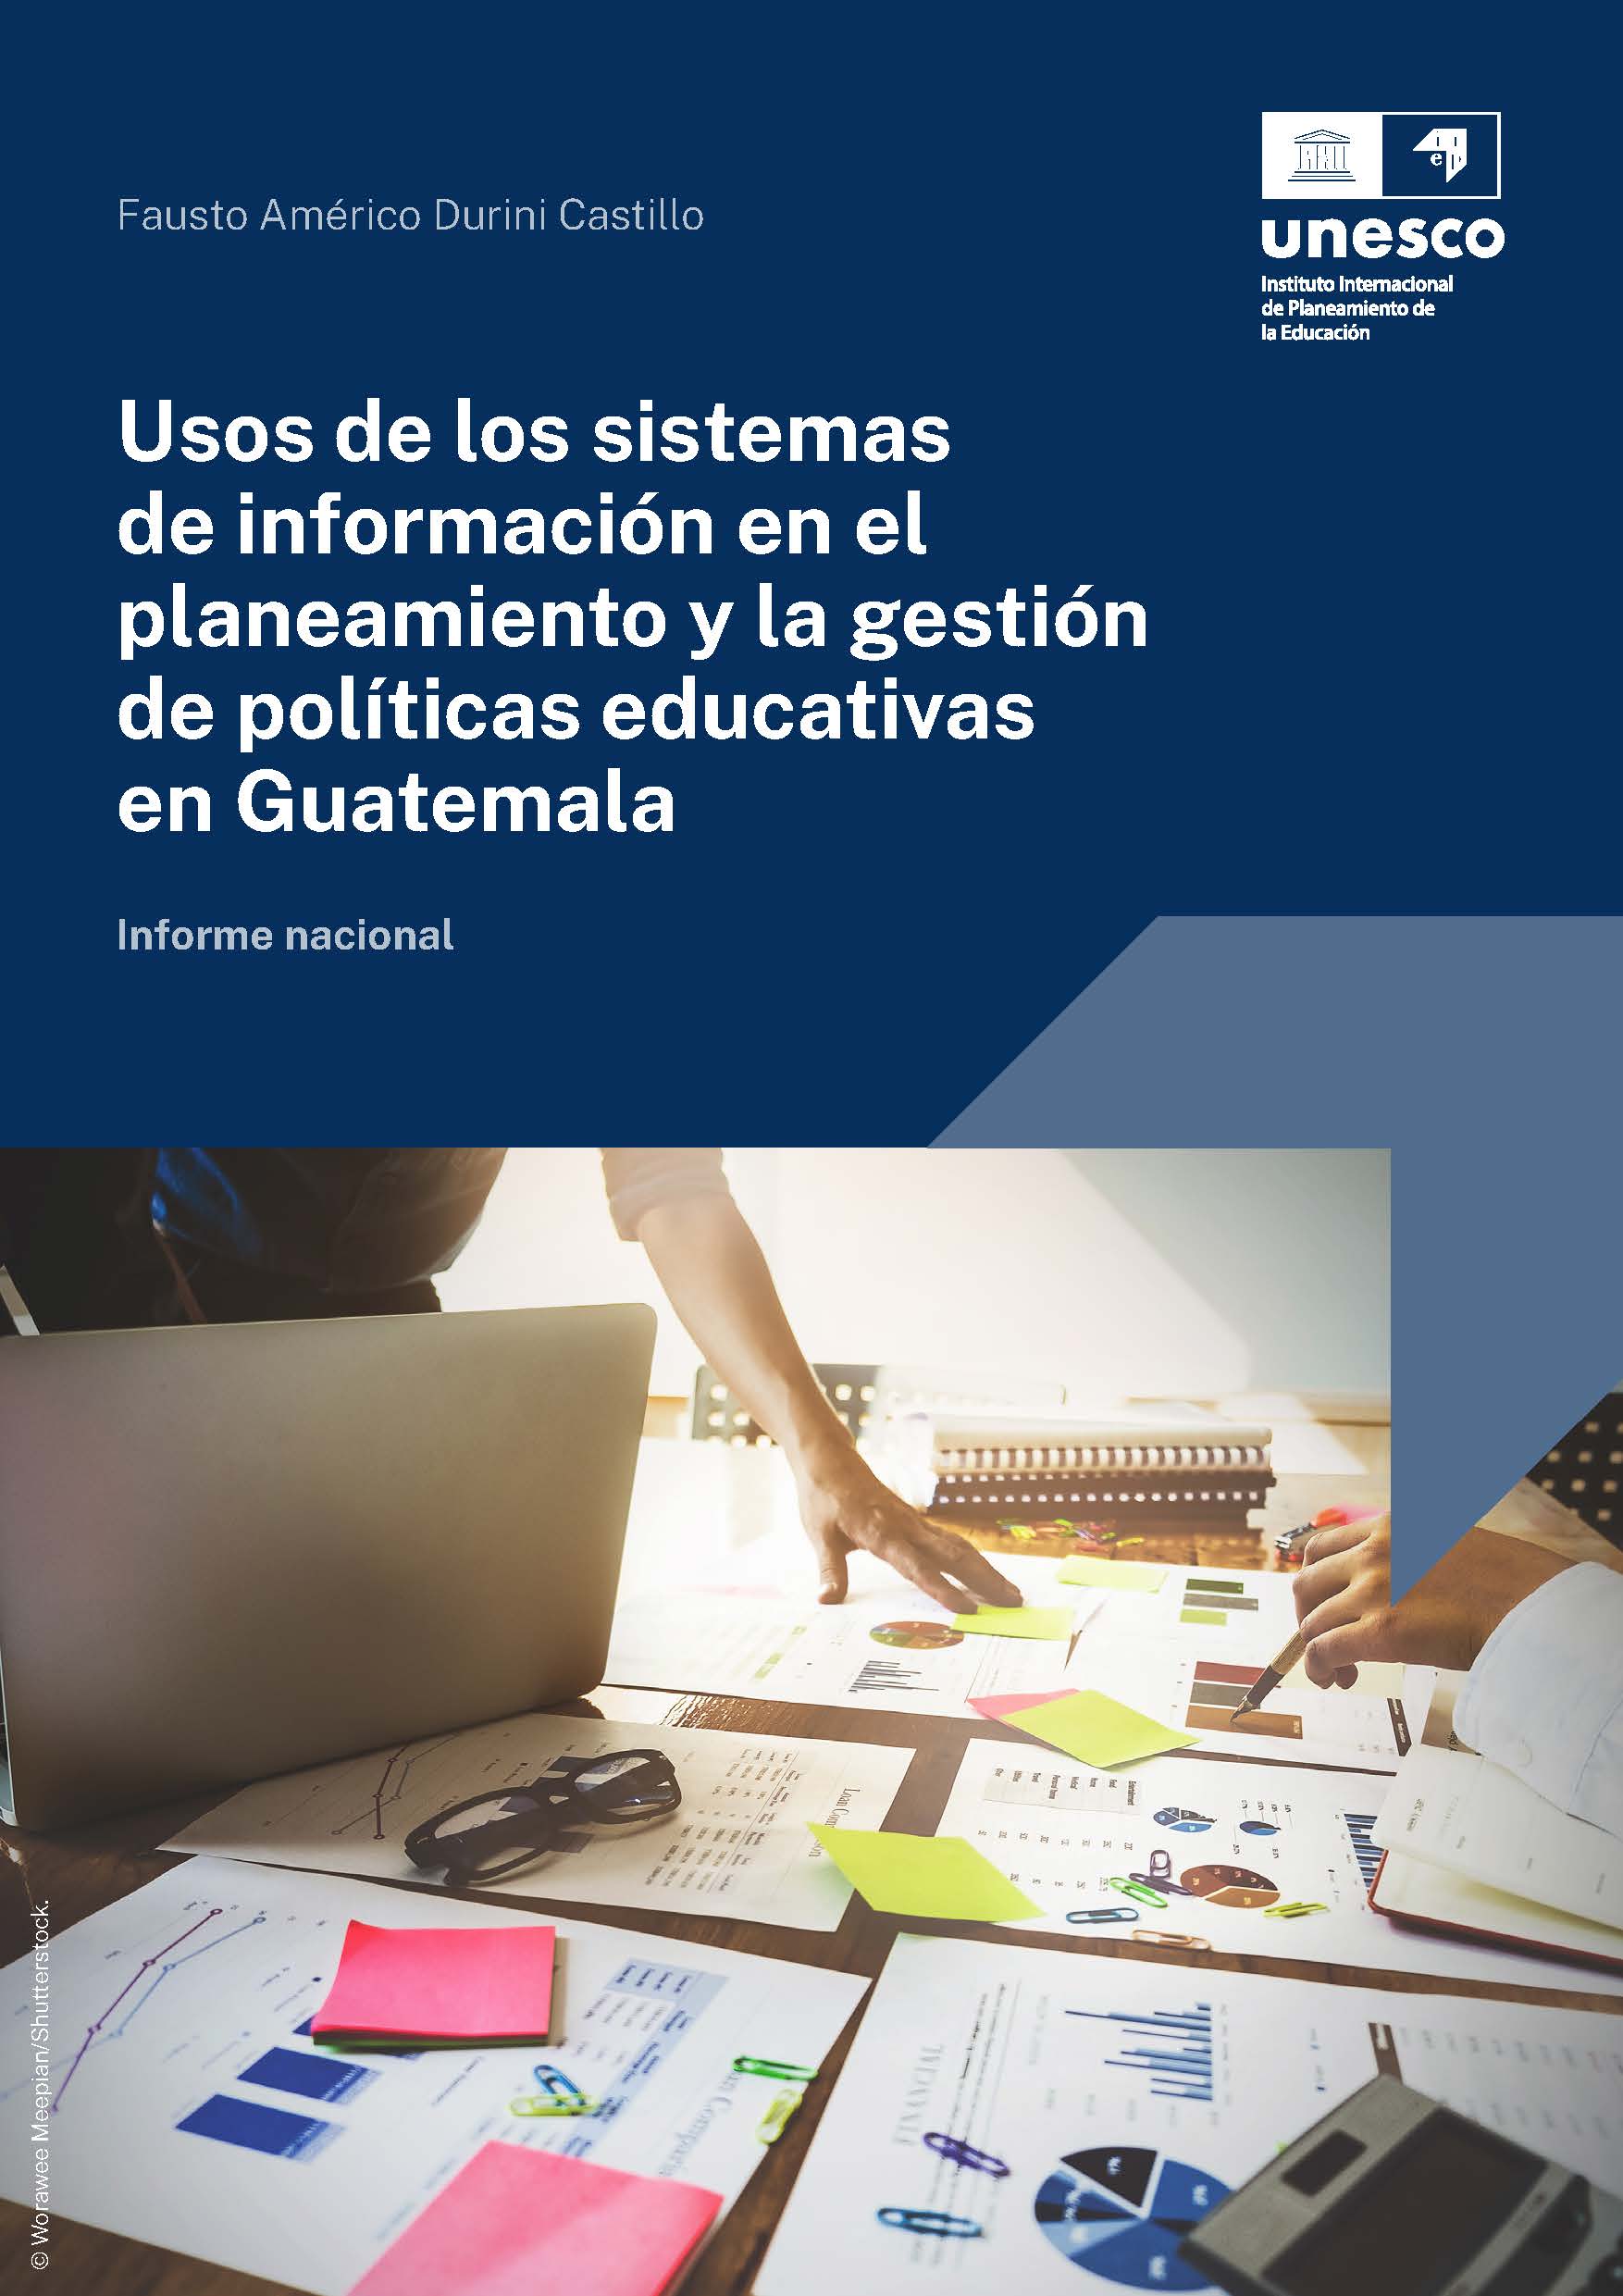 Uso de los sistemas de información en el planeamiento y gestión de políticas educativas en Guatemala